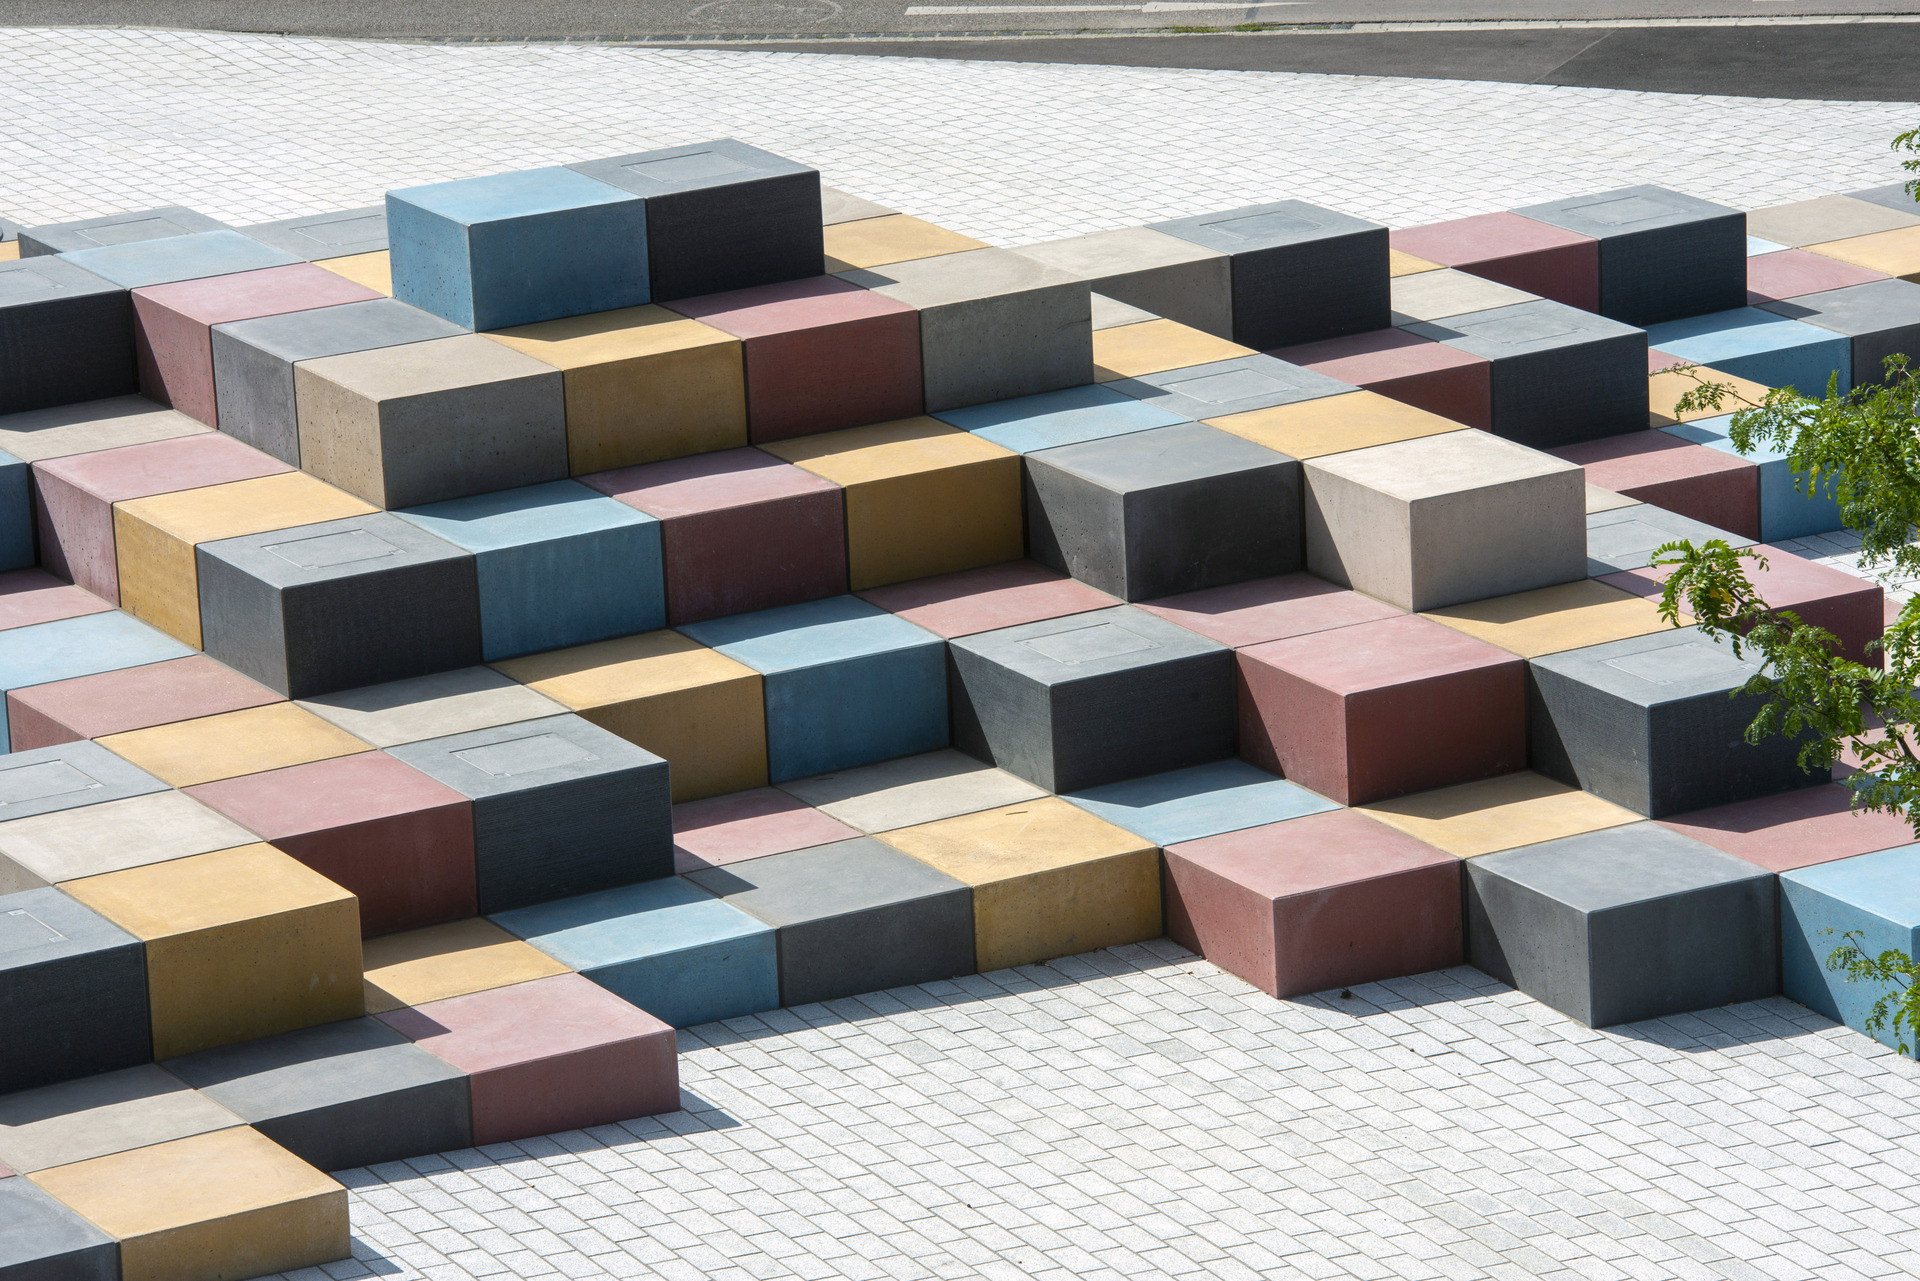 Öffentlicher Platz in Augusburg, Deutschland, bestehend aus Beton-Kuben eingefärbt mit Bayferrox Pigmenten